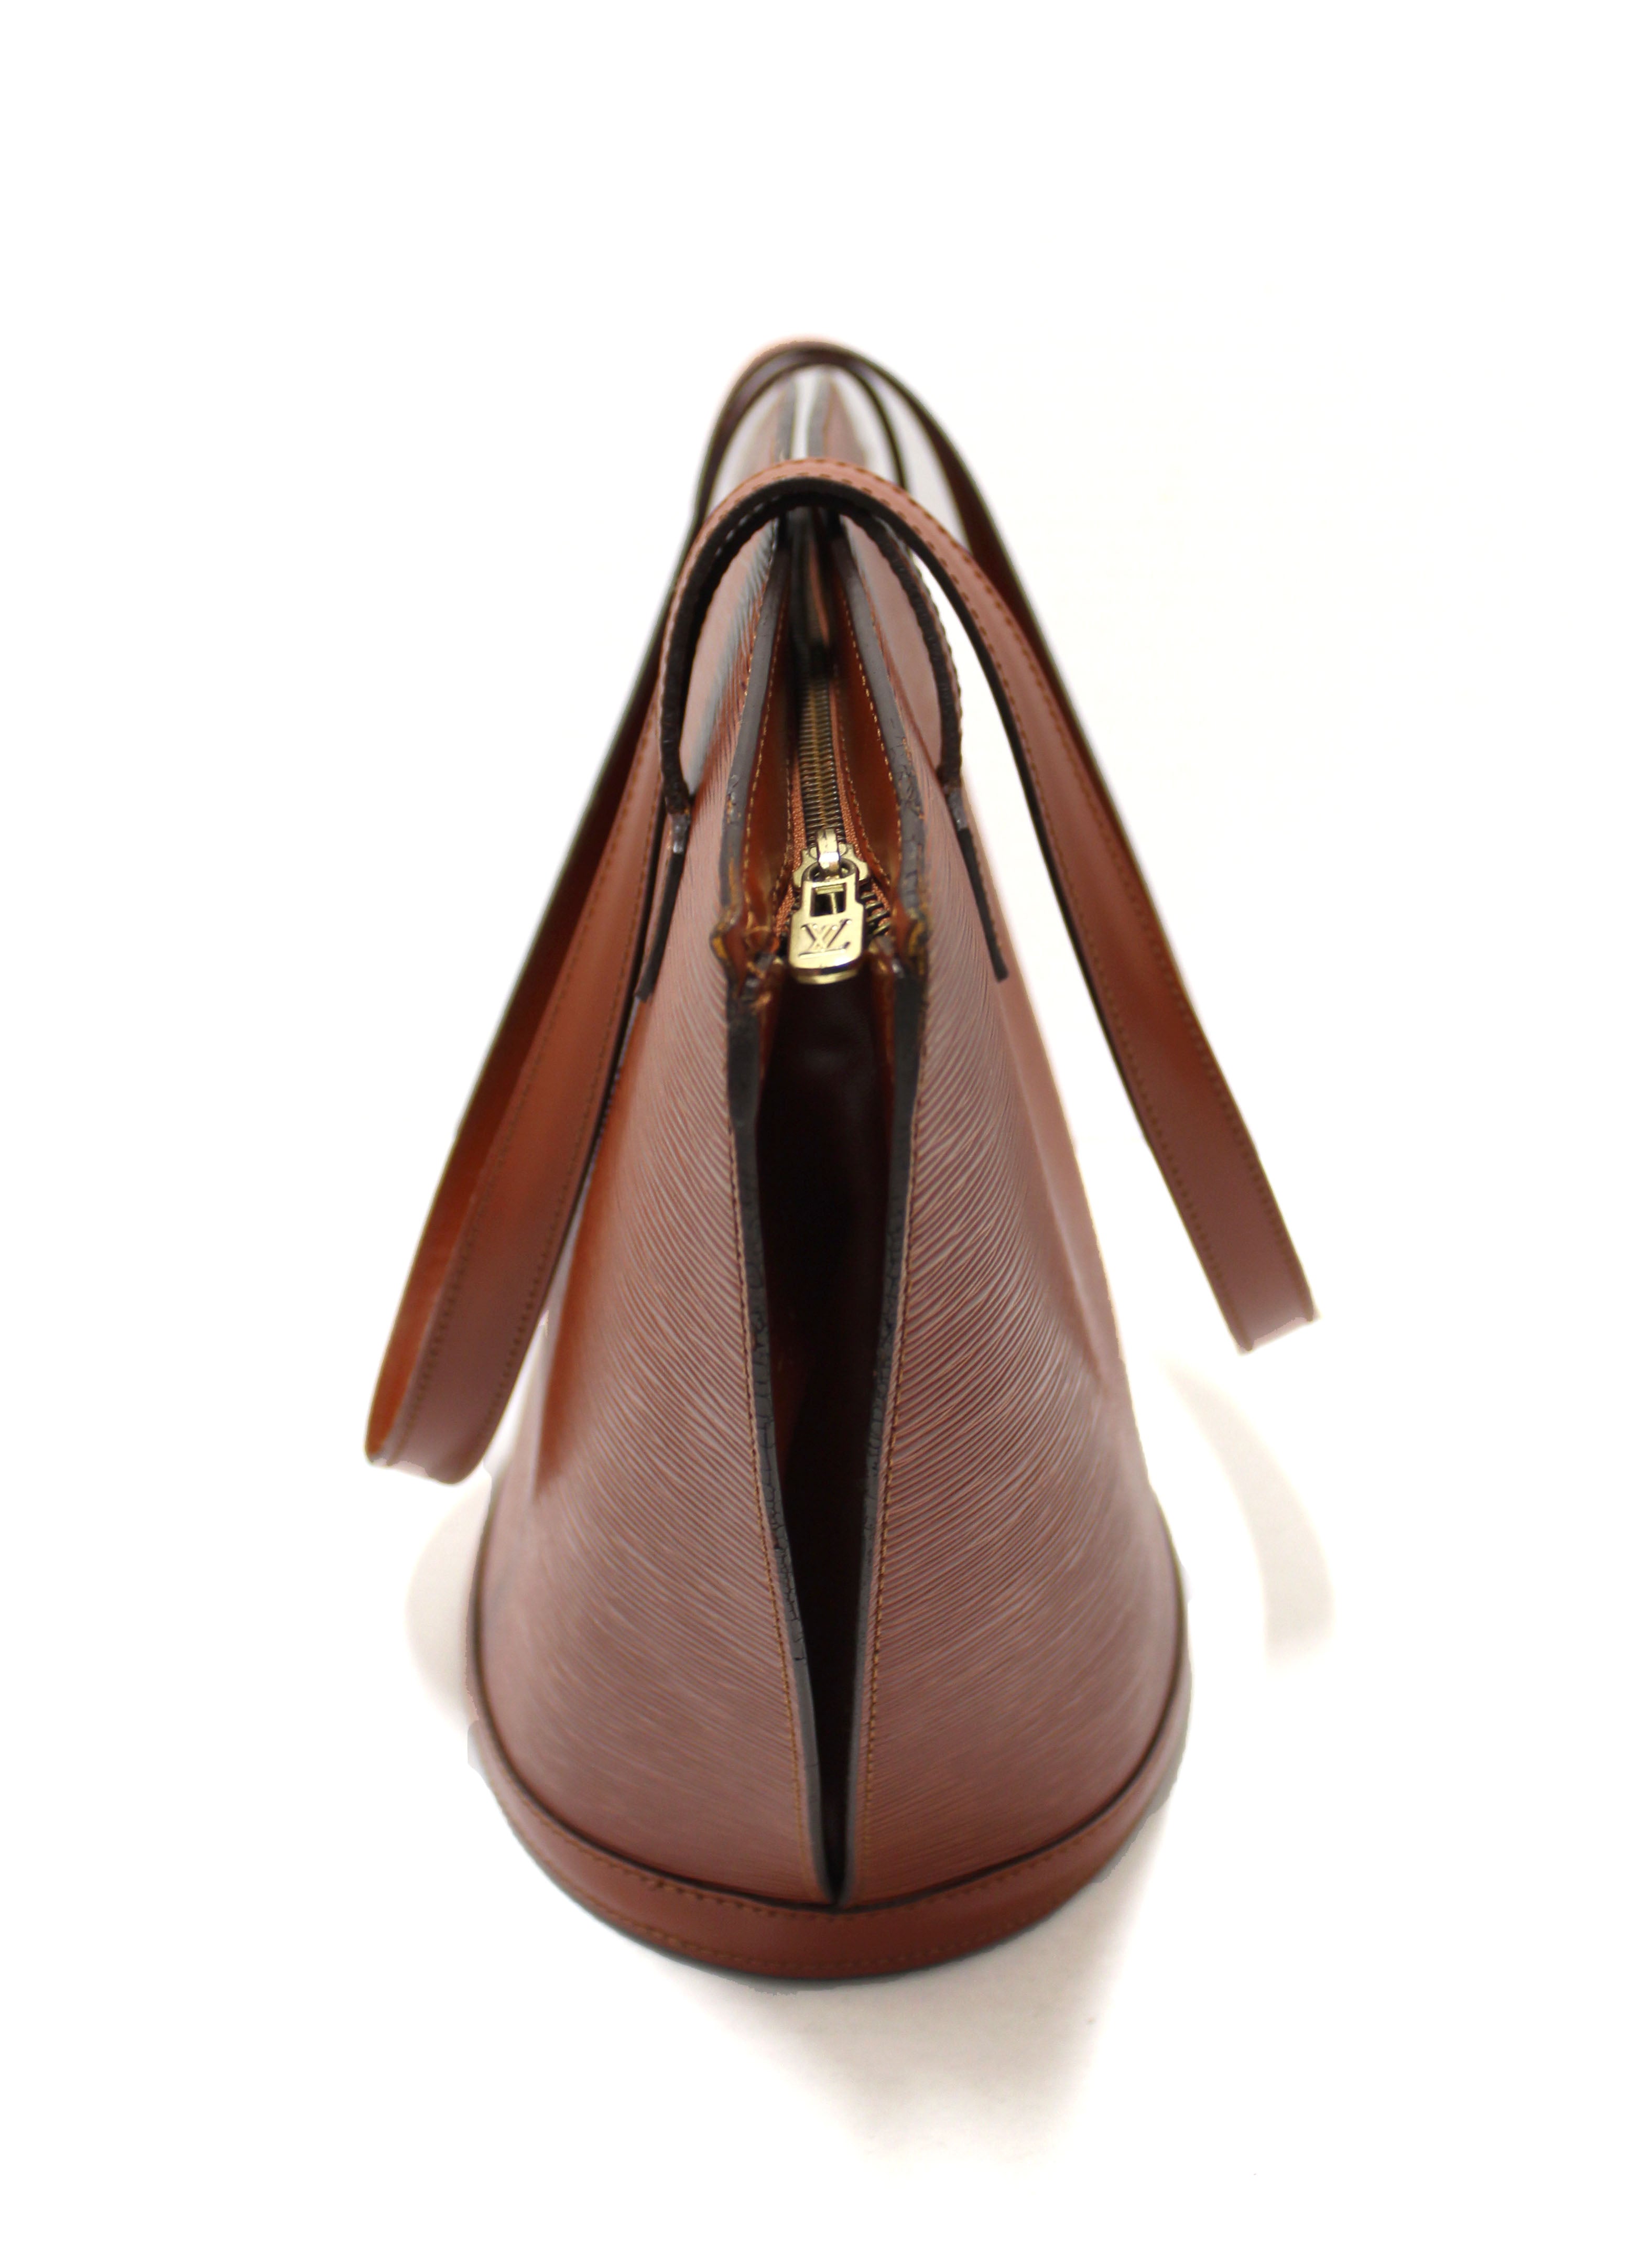 Authentic Louis Vuitton Brown Fawn Epi Large St Jacques Shoulder Tote Bag